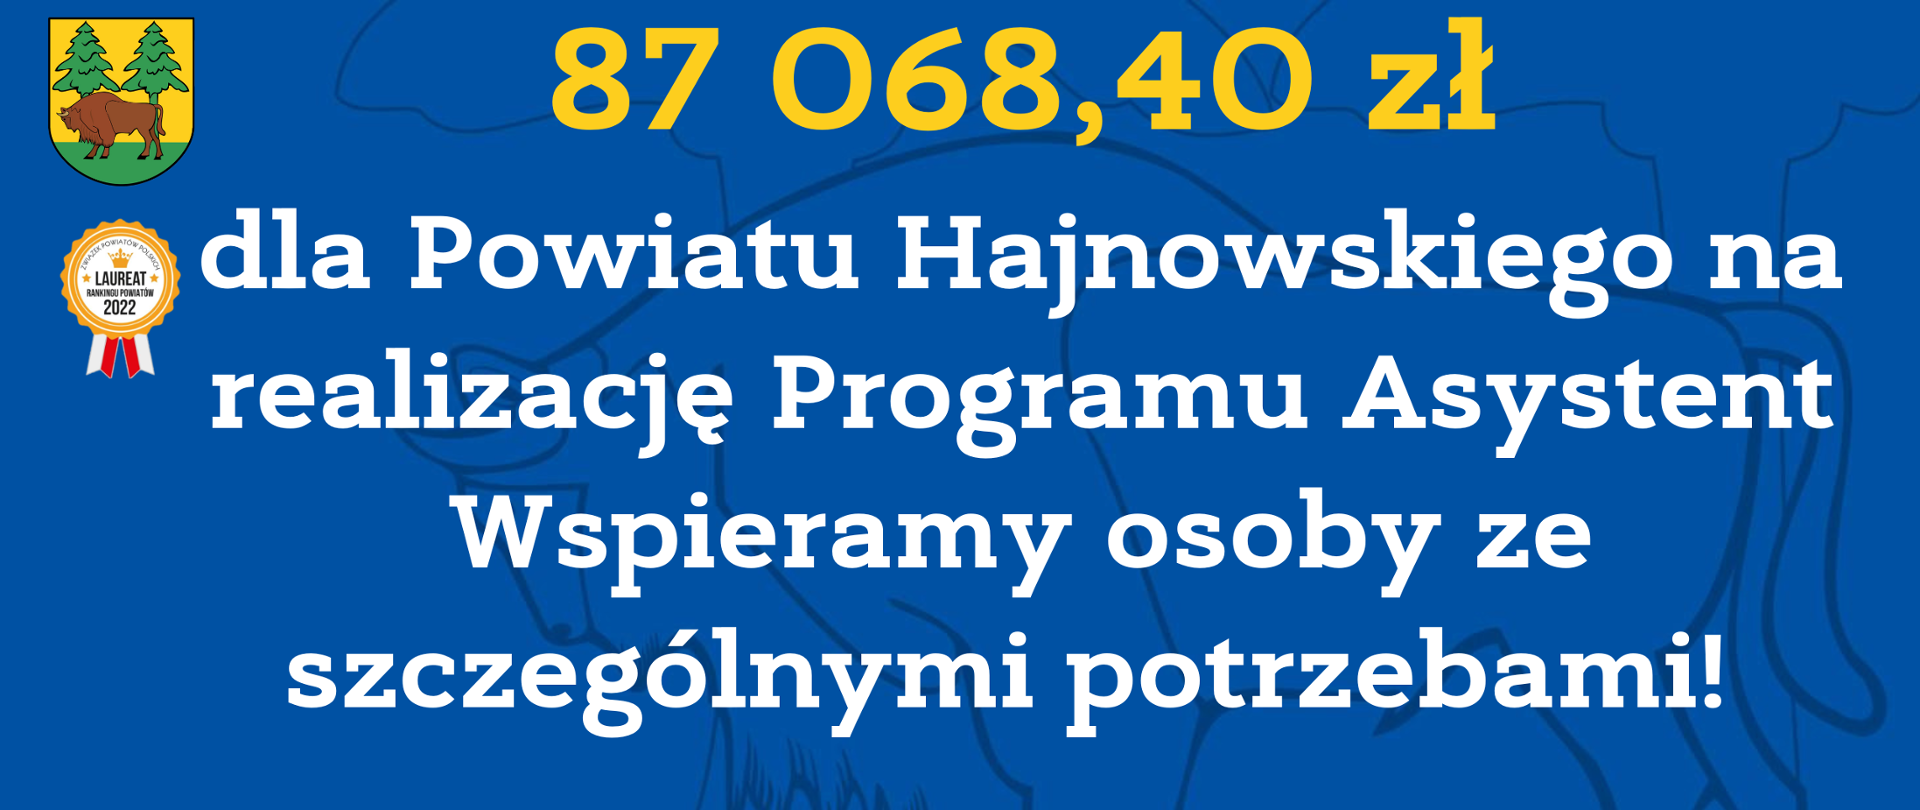 87 068,40 zł dla Powiatu Hajnowskiego na realizację Programu Asystent. Wspieramy osoby ze szczególnymi potrzebami!